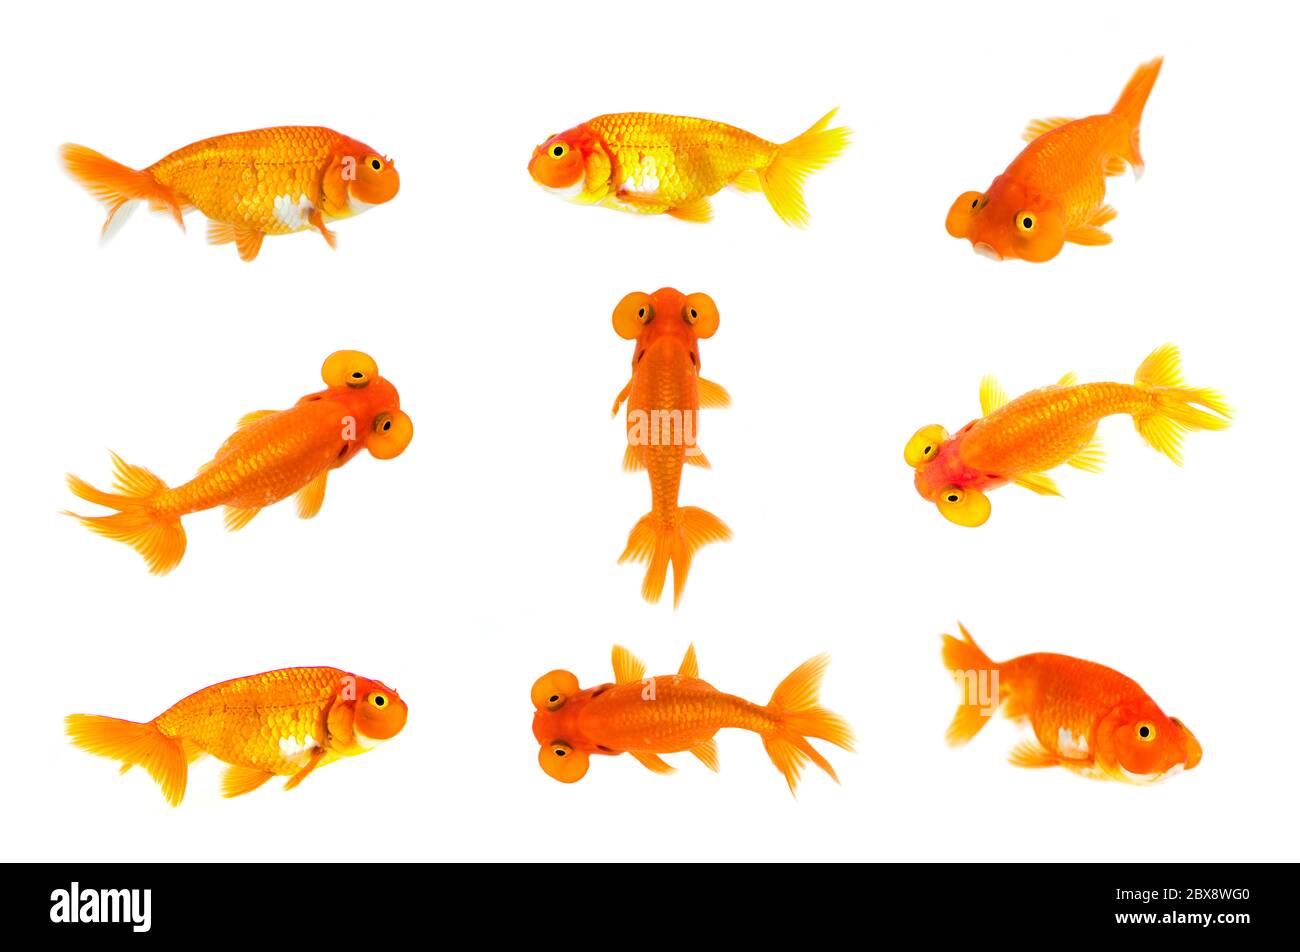 Group of goldfish and bubble eye goldfish isolated on a white background. Animal. Pet. Stock Photo